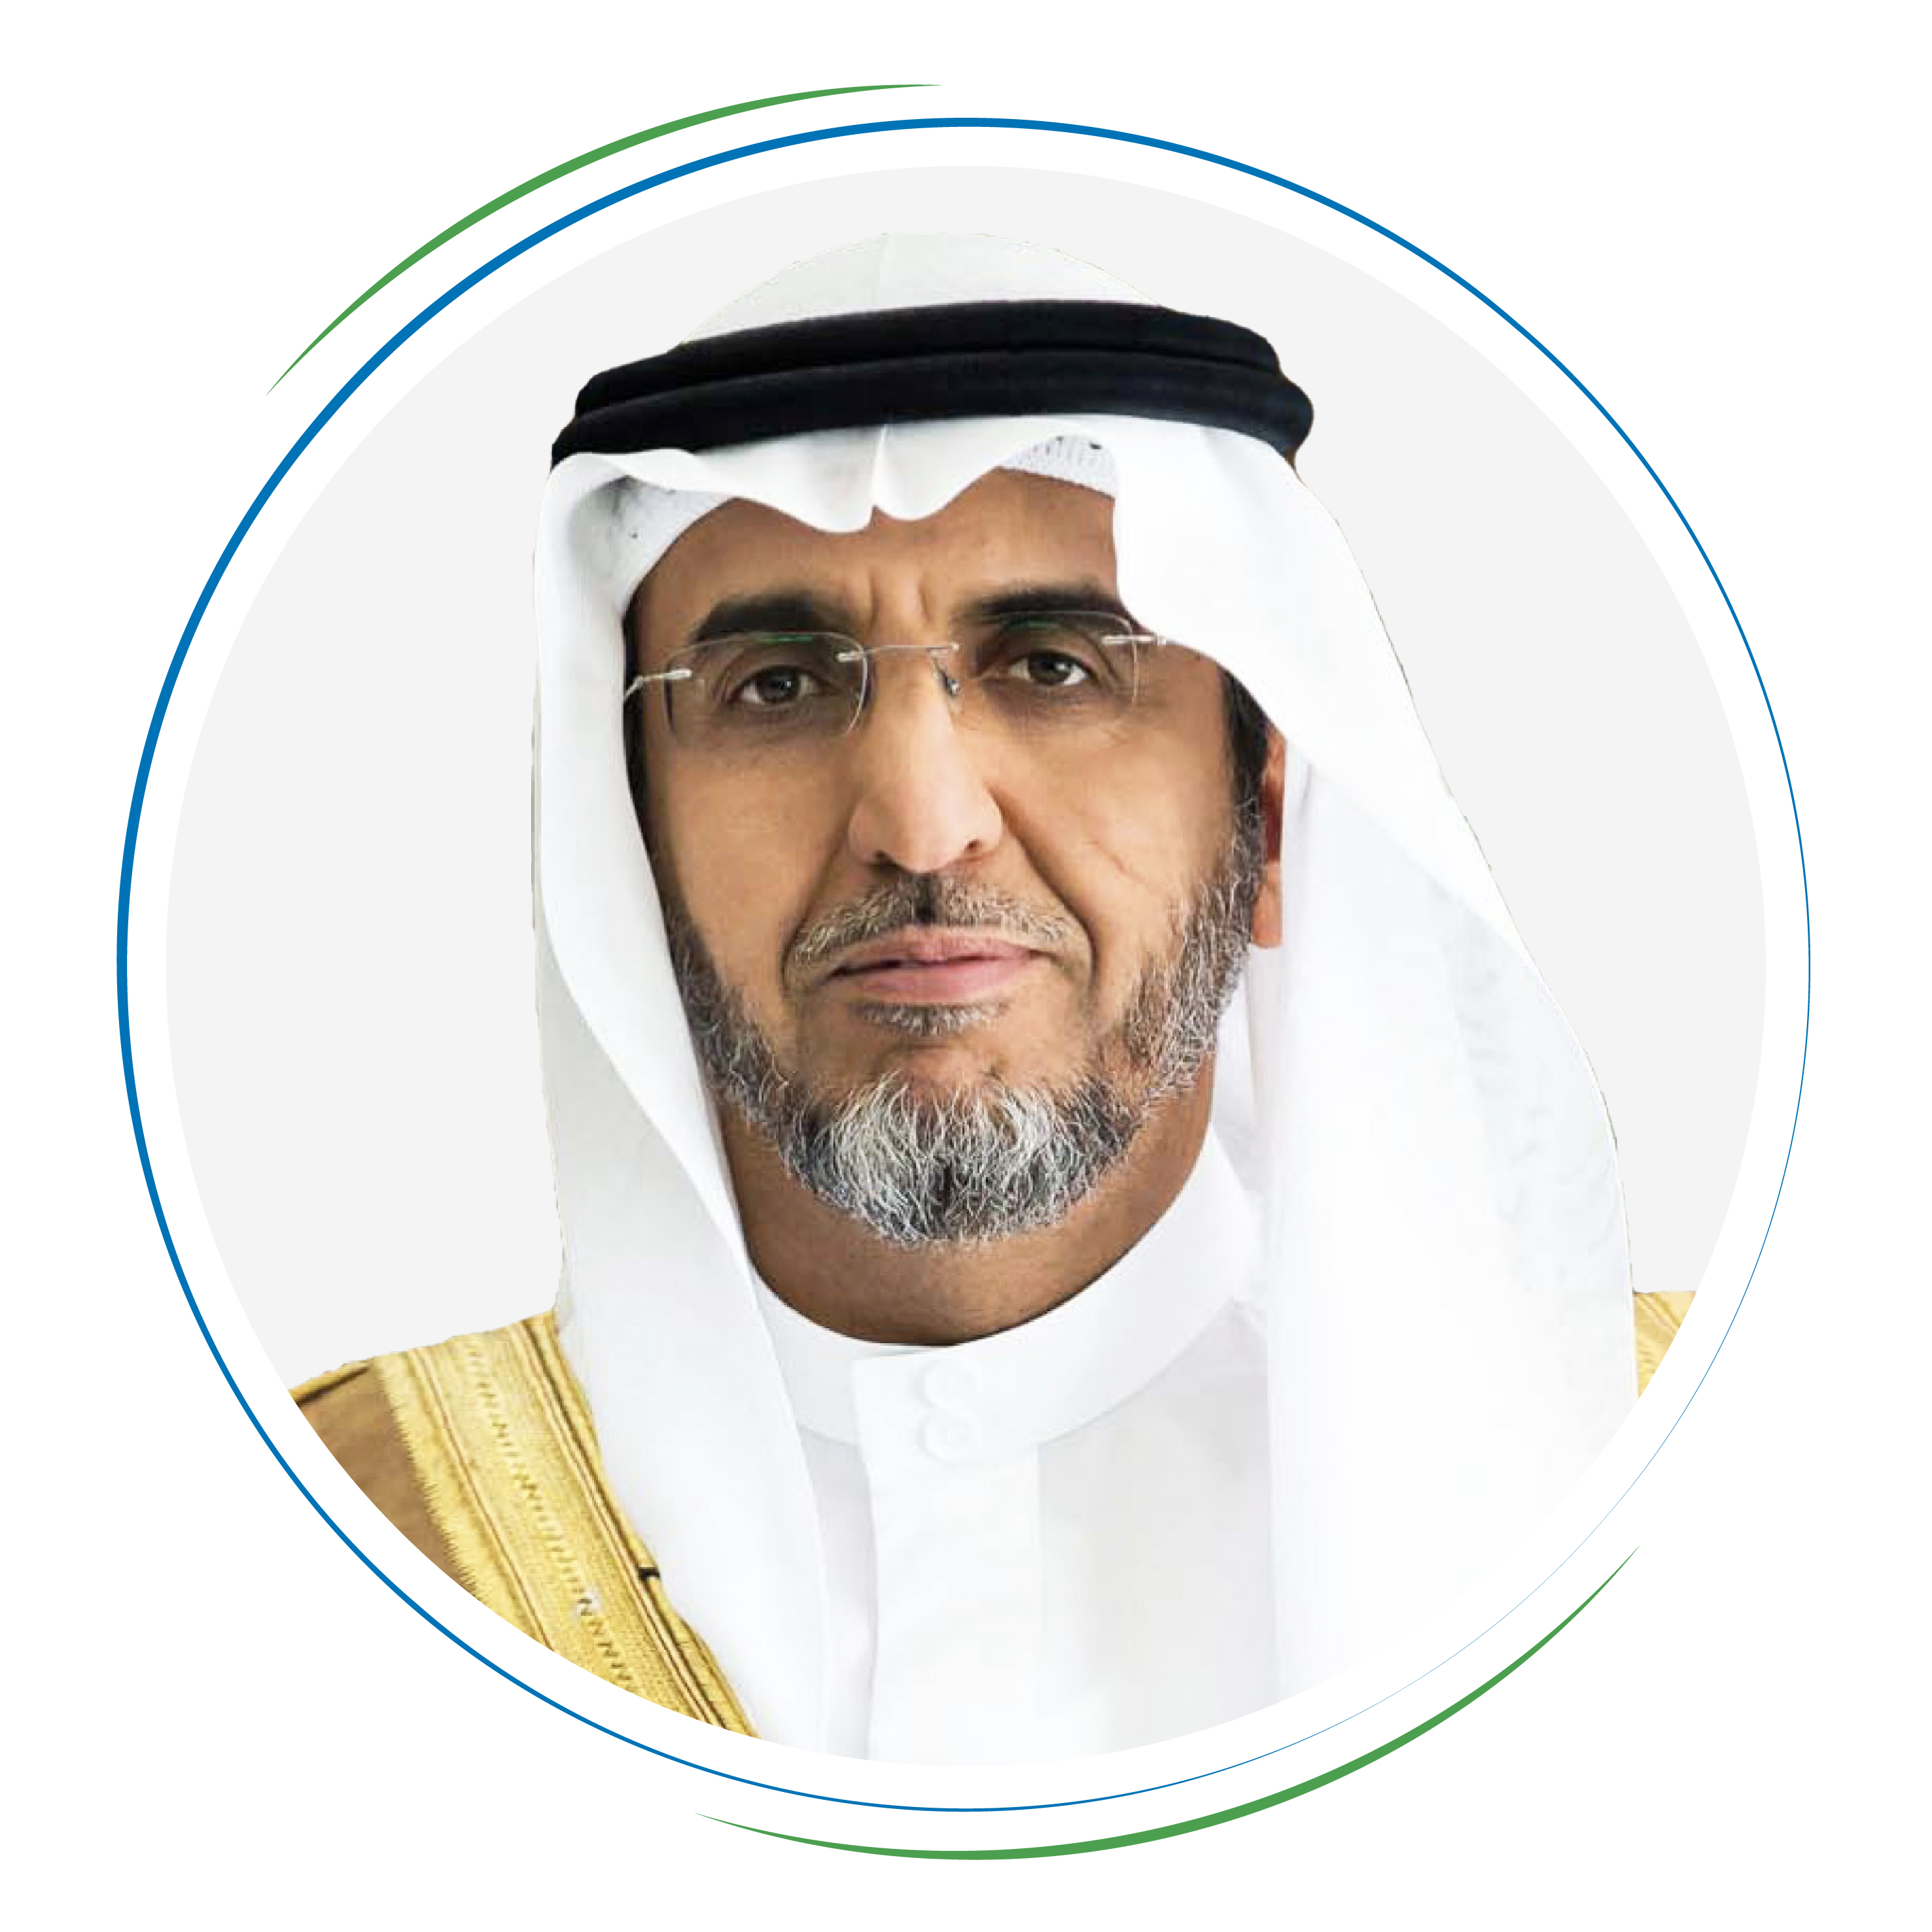 His Excellency Dr. Saad bin Othman Al-Qasabi